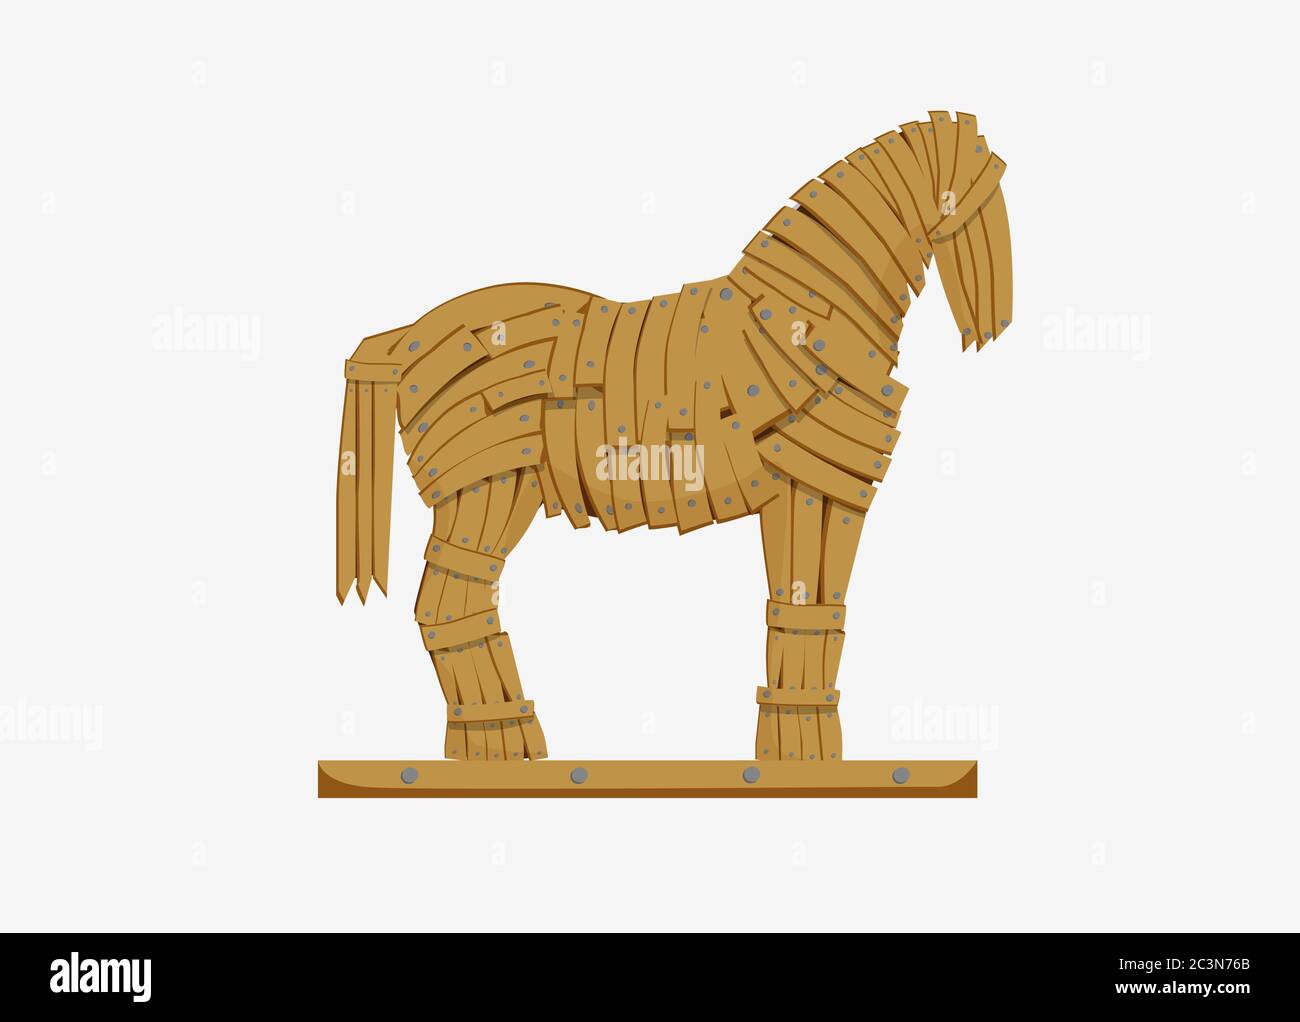 Abbildung: Trojanisches Pferd. Mythicaln Statue Pferd militärische Täuschung griechischen Truppen. Stock Vektor